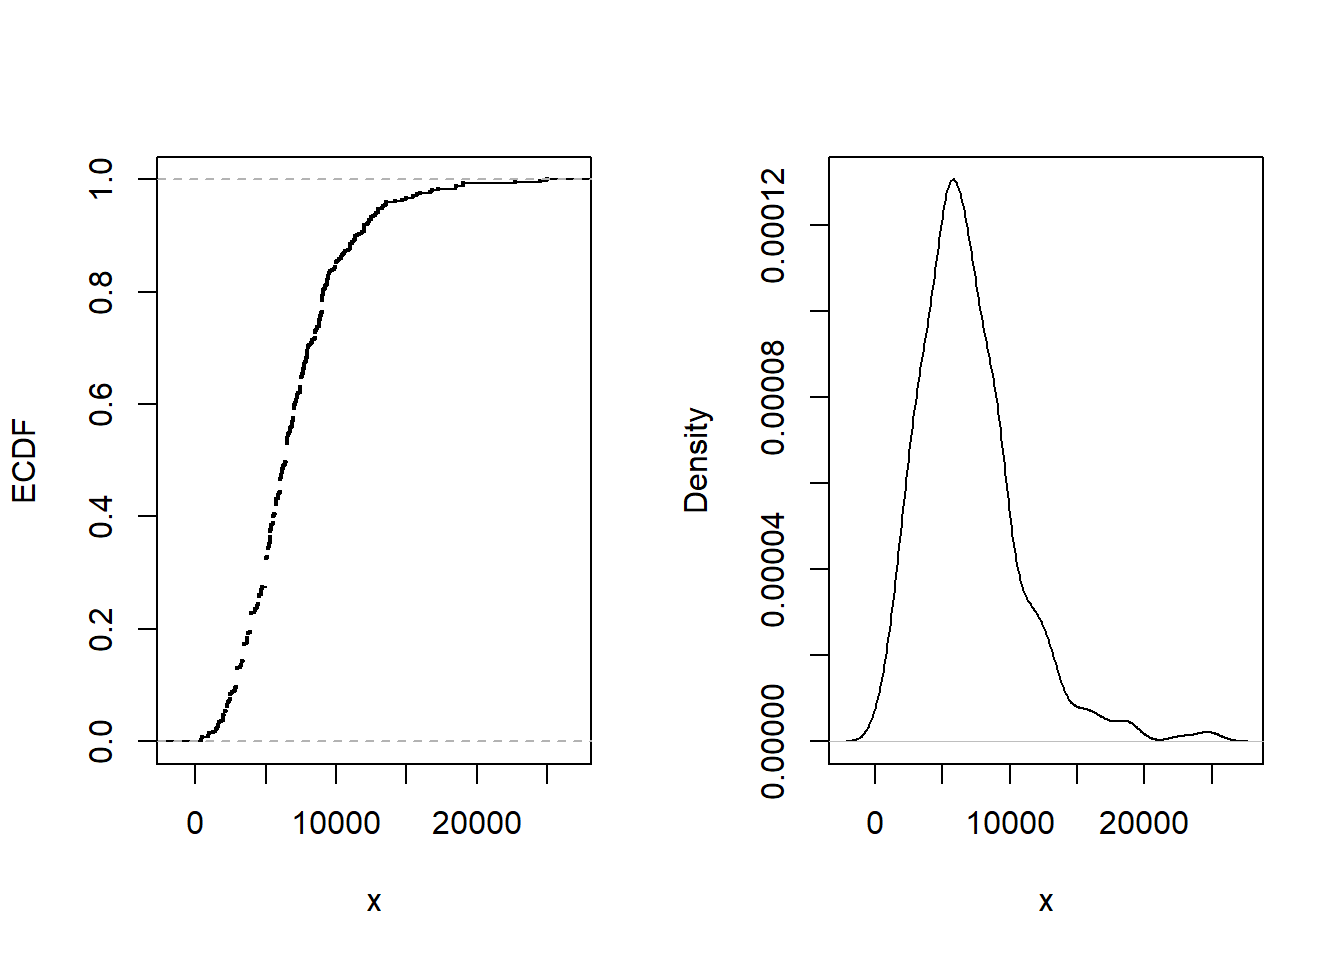 Siniestros por daños corporales. La figura de la izquierda proporciona la función de distribución empírica. La figura de la derecha presenta un gráfico de la densidad no paramétrica.